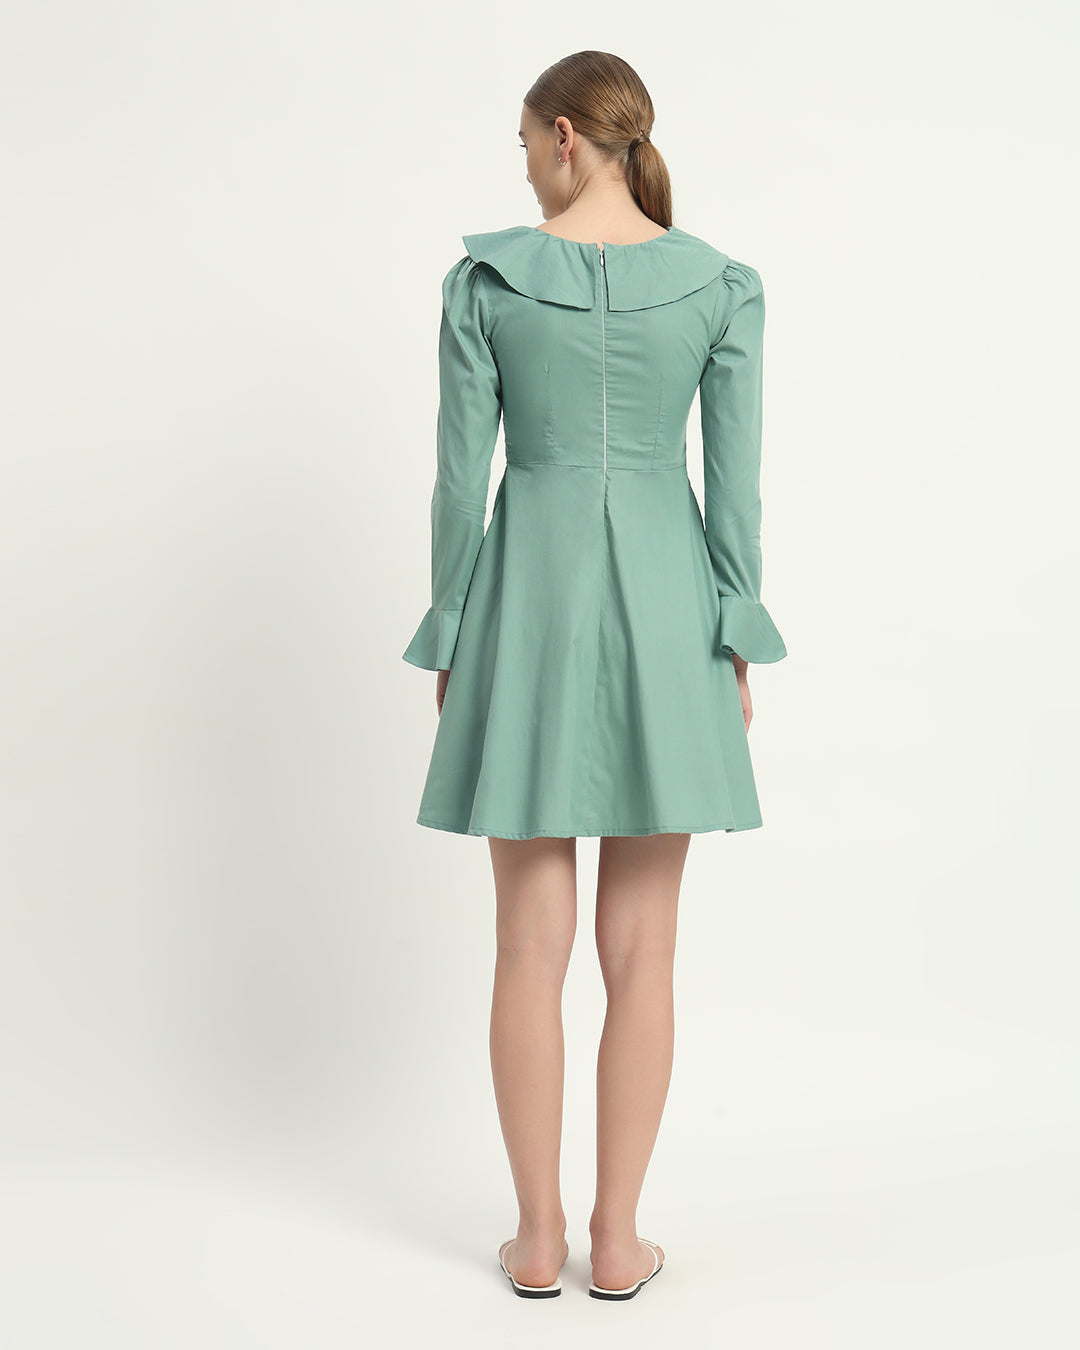 The Fredonia Mint Cotton Dress